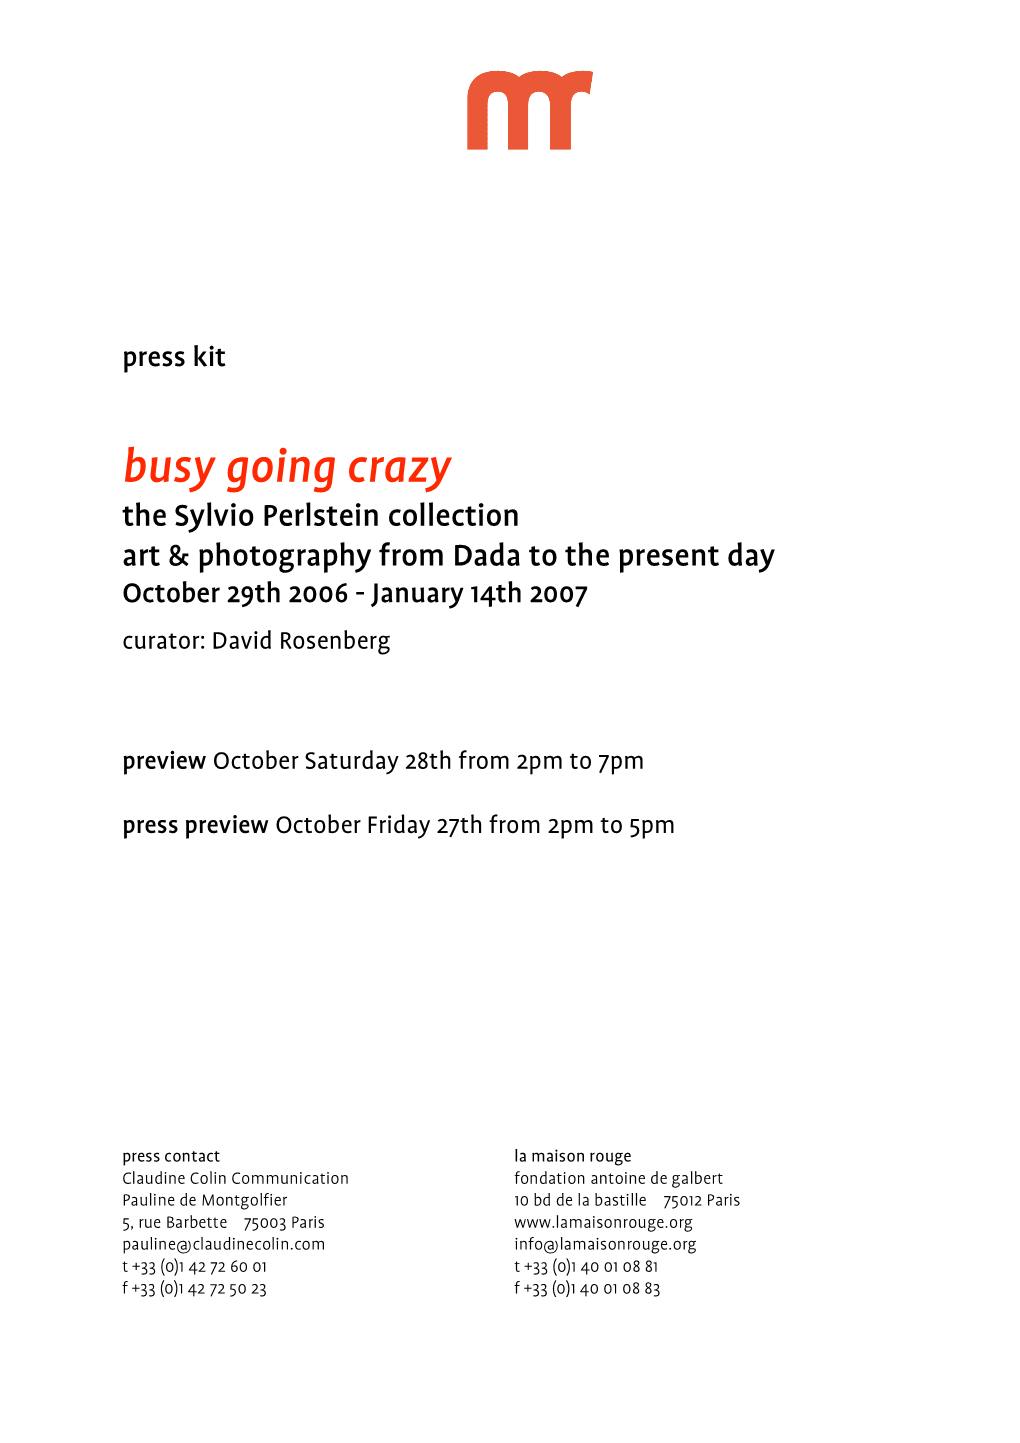 Busy Going Crazy, Collection Sylvio Perlstein